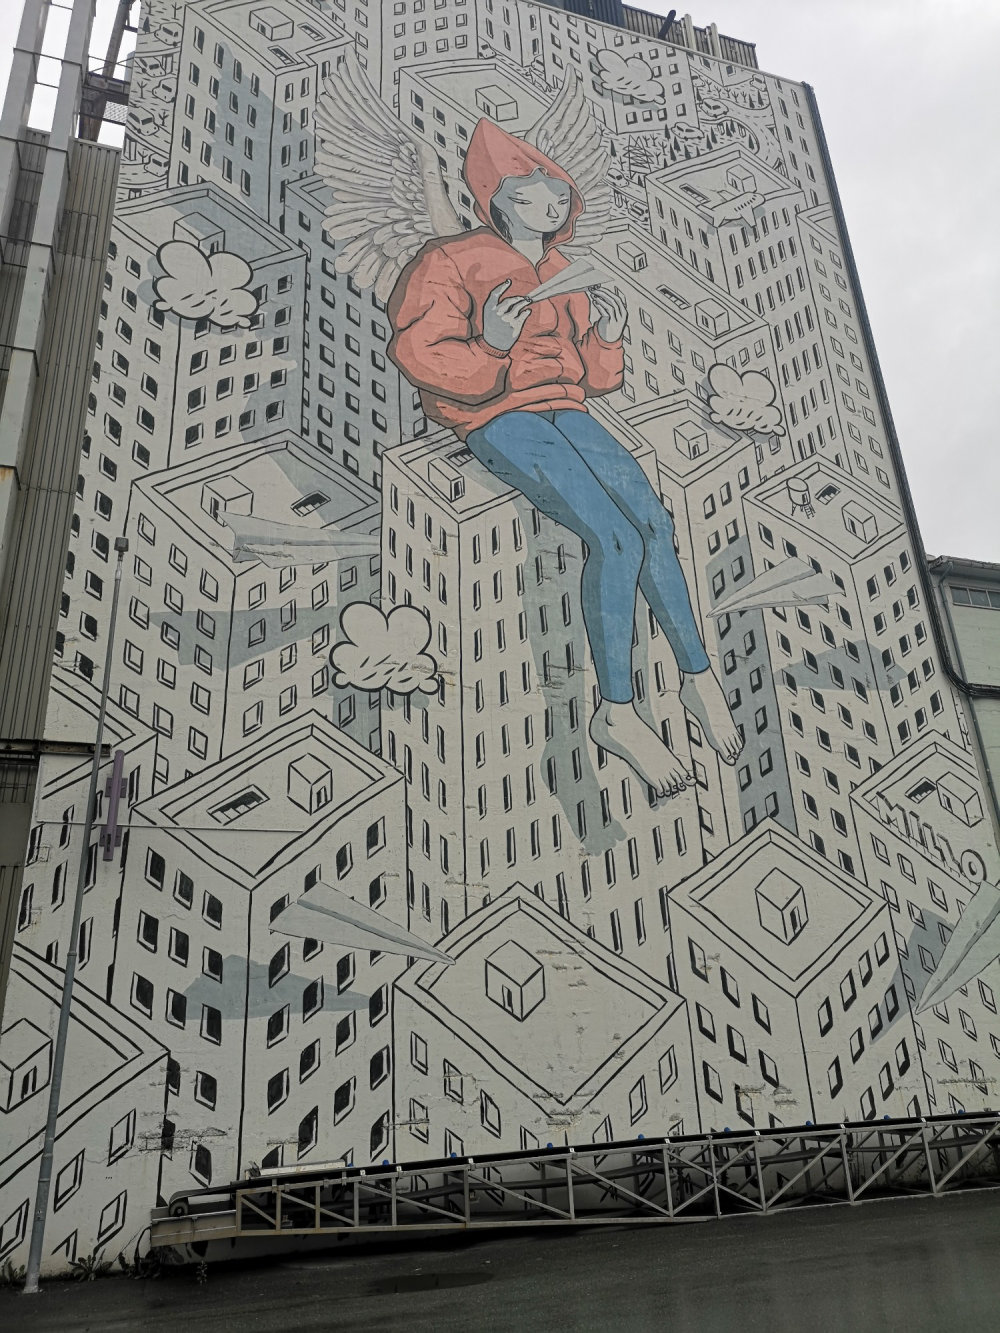 mural in Ilsvika by artist Millo.